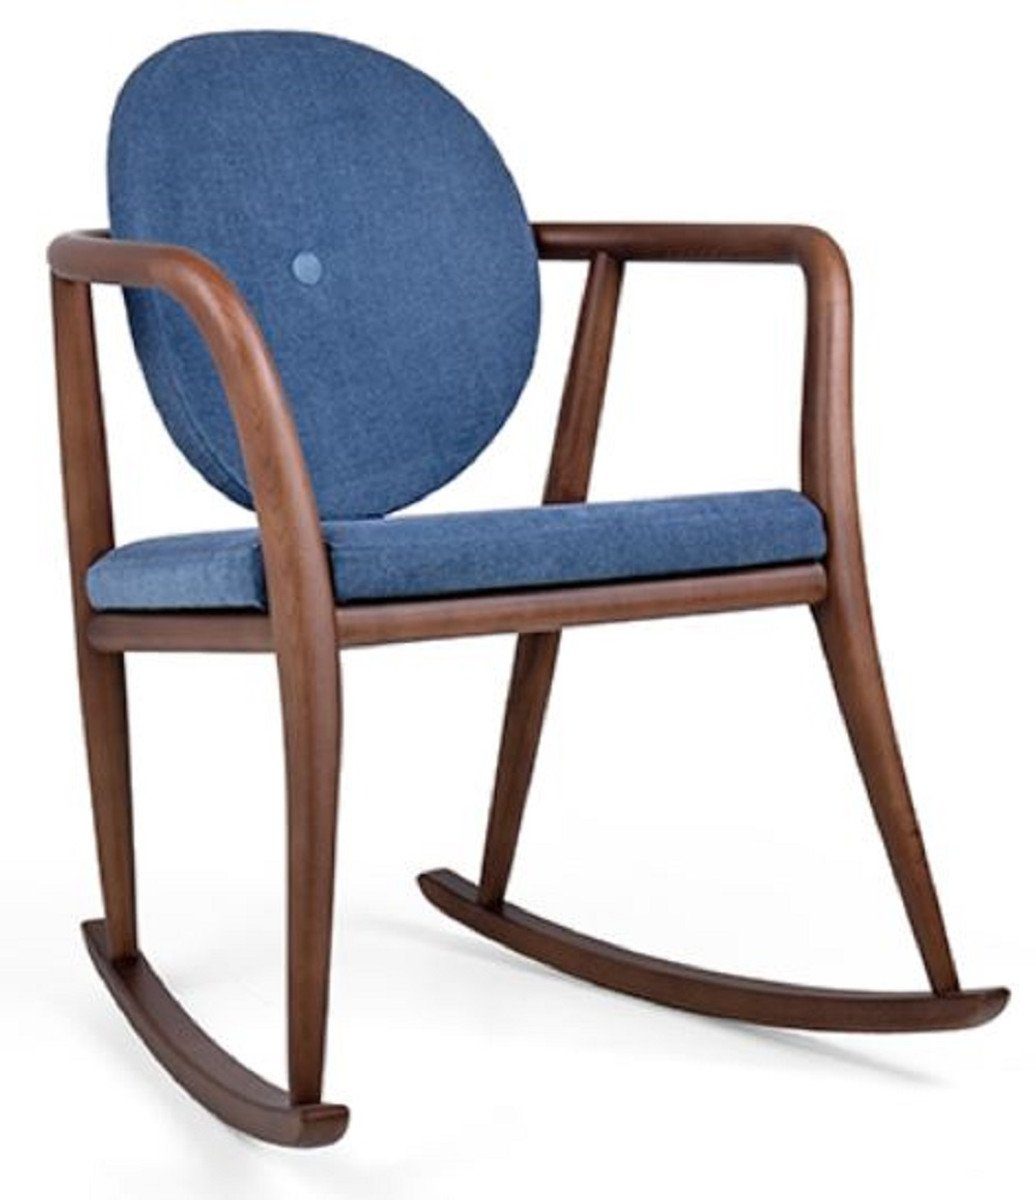 Casa Padrino Schaukelstuhl Luxus Schaukelstuhl Blau / Braun 66,5 x 71 x H. 87,5 cm - Gepolsterter Massivholz Stuhl mit Armlehnen - Luxus Wohnzimmer Möbel